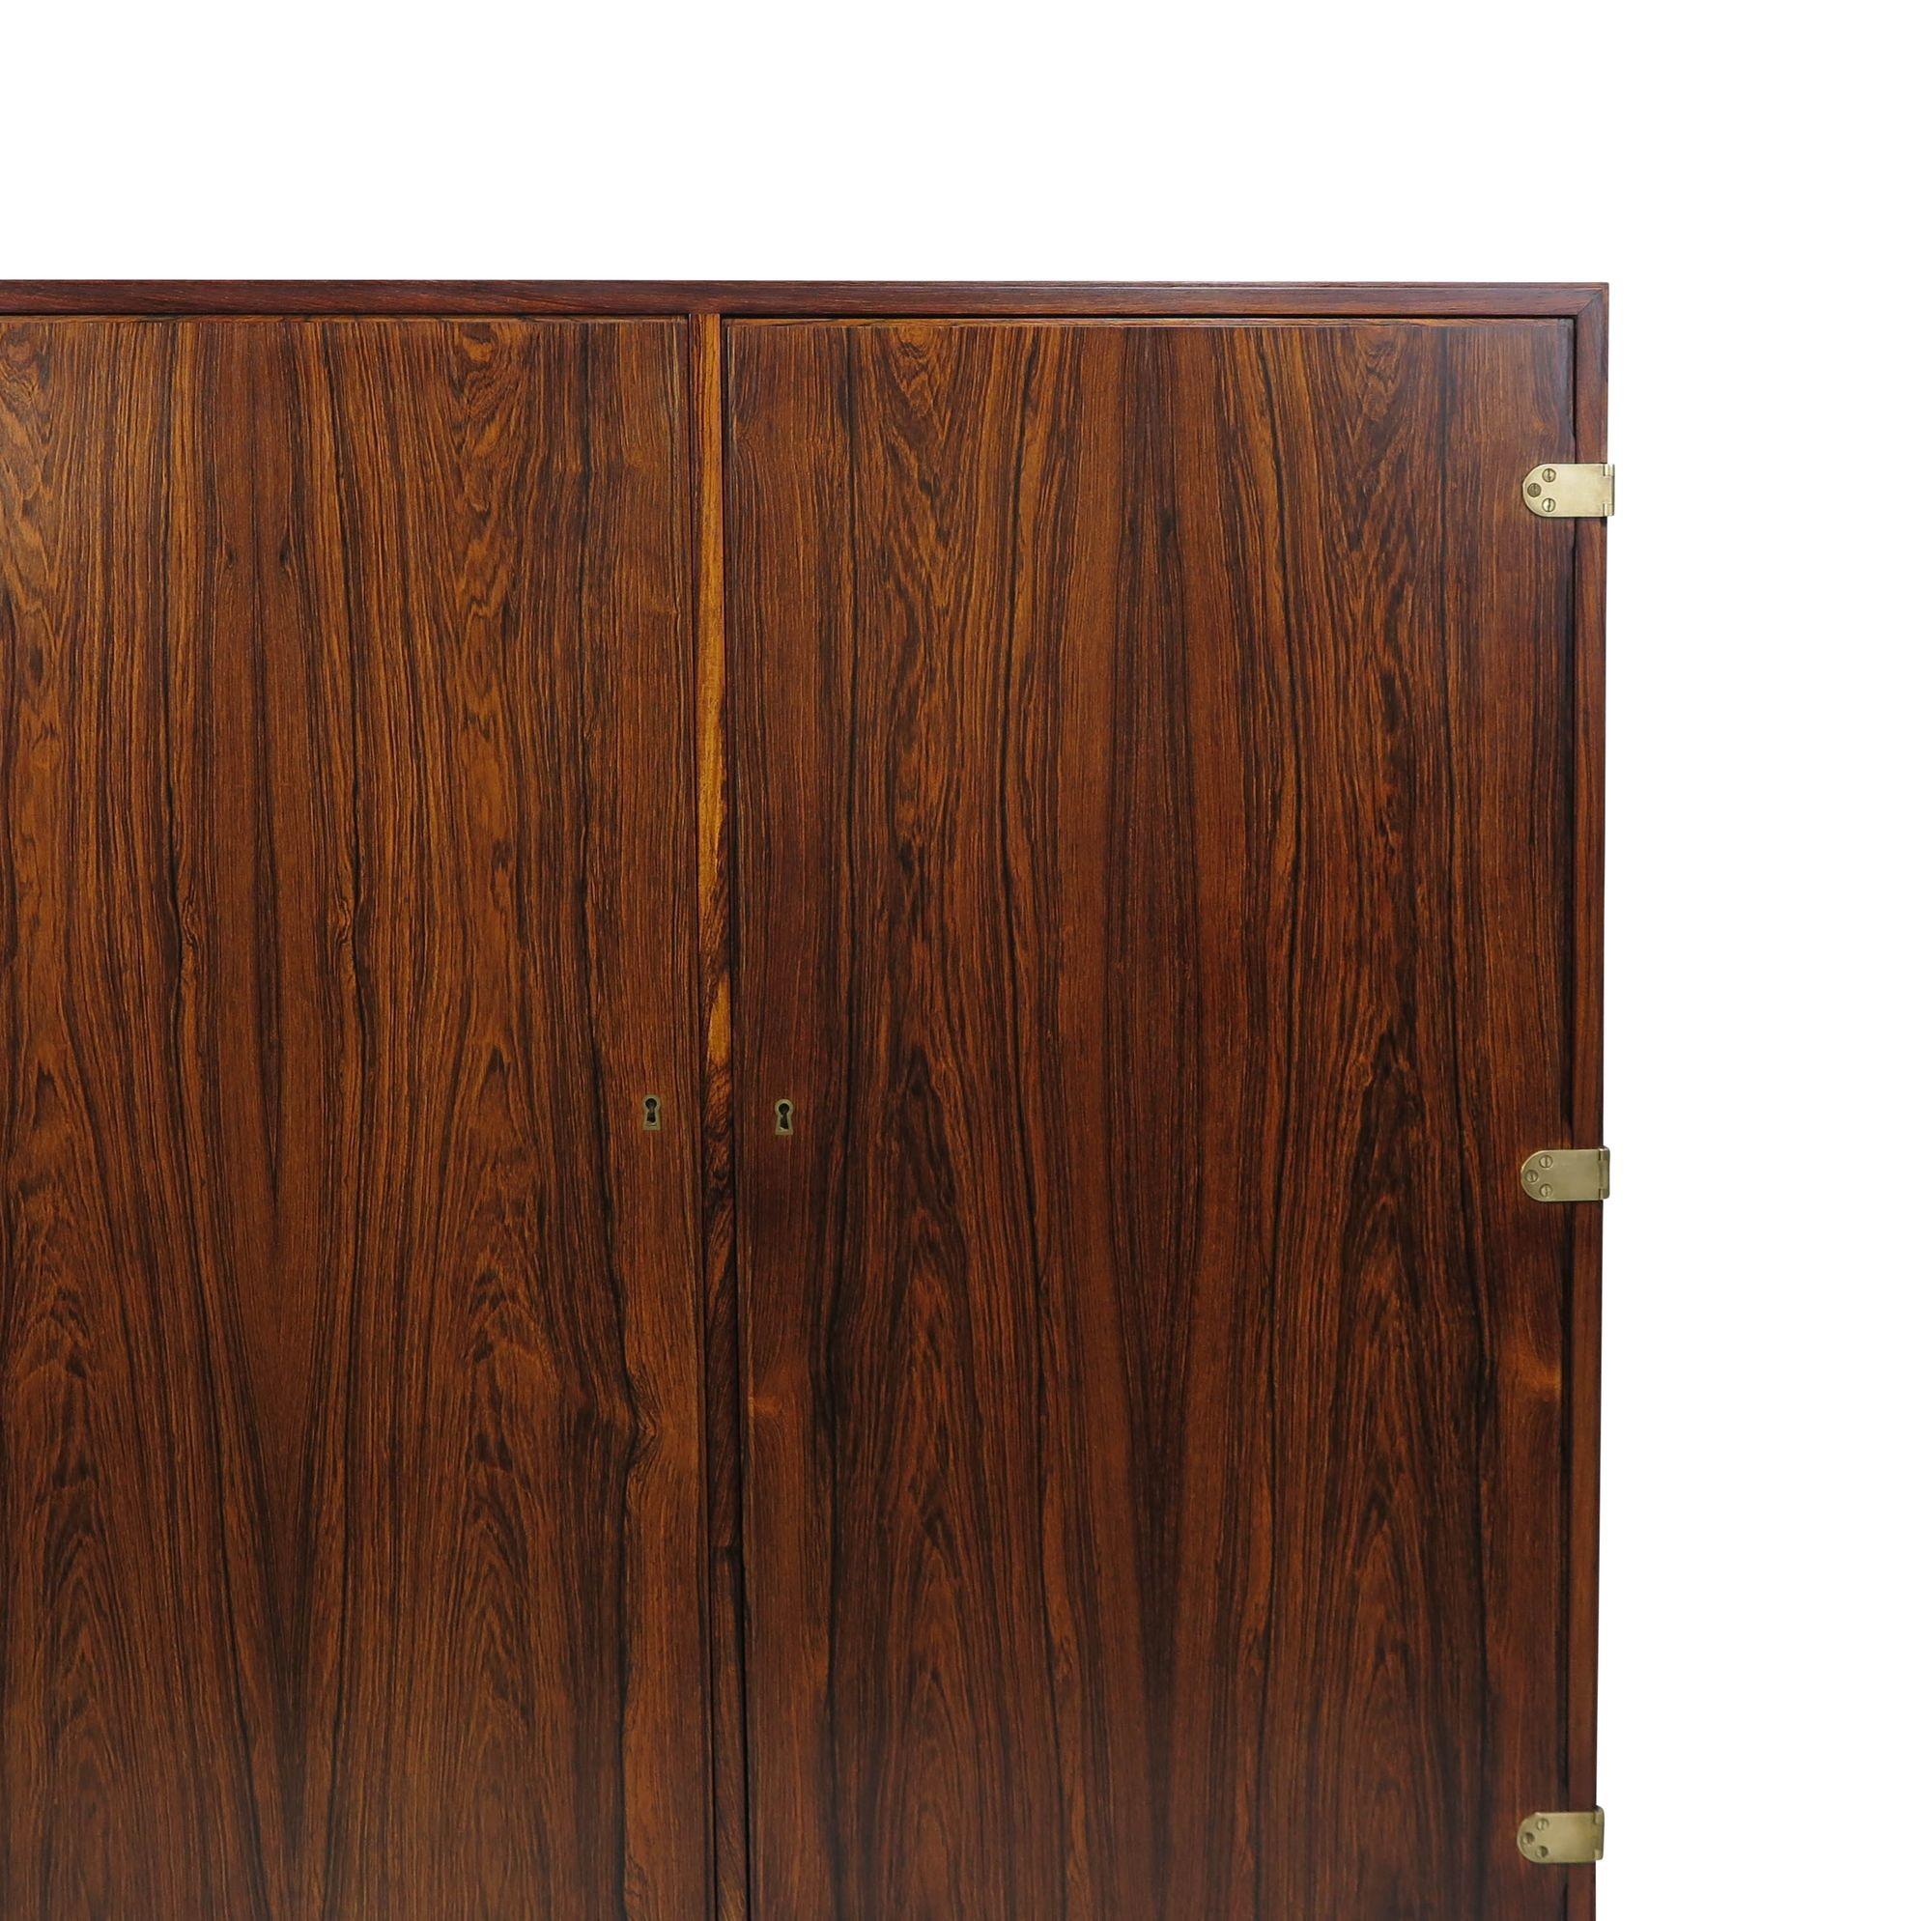 Barschrank aus skandinavischem Palisanderholz, entworfen von Børge Mogensen, Dänemark, 1948. Dieser handgefertigte Schrank aus brasilianischem Palisanderholz zeigt mit seinen auf Gehrung geschnittenen Kanten und den zwei verschließbaren Türen mit